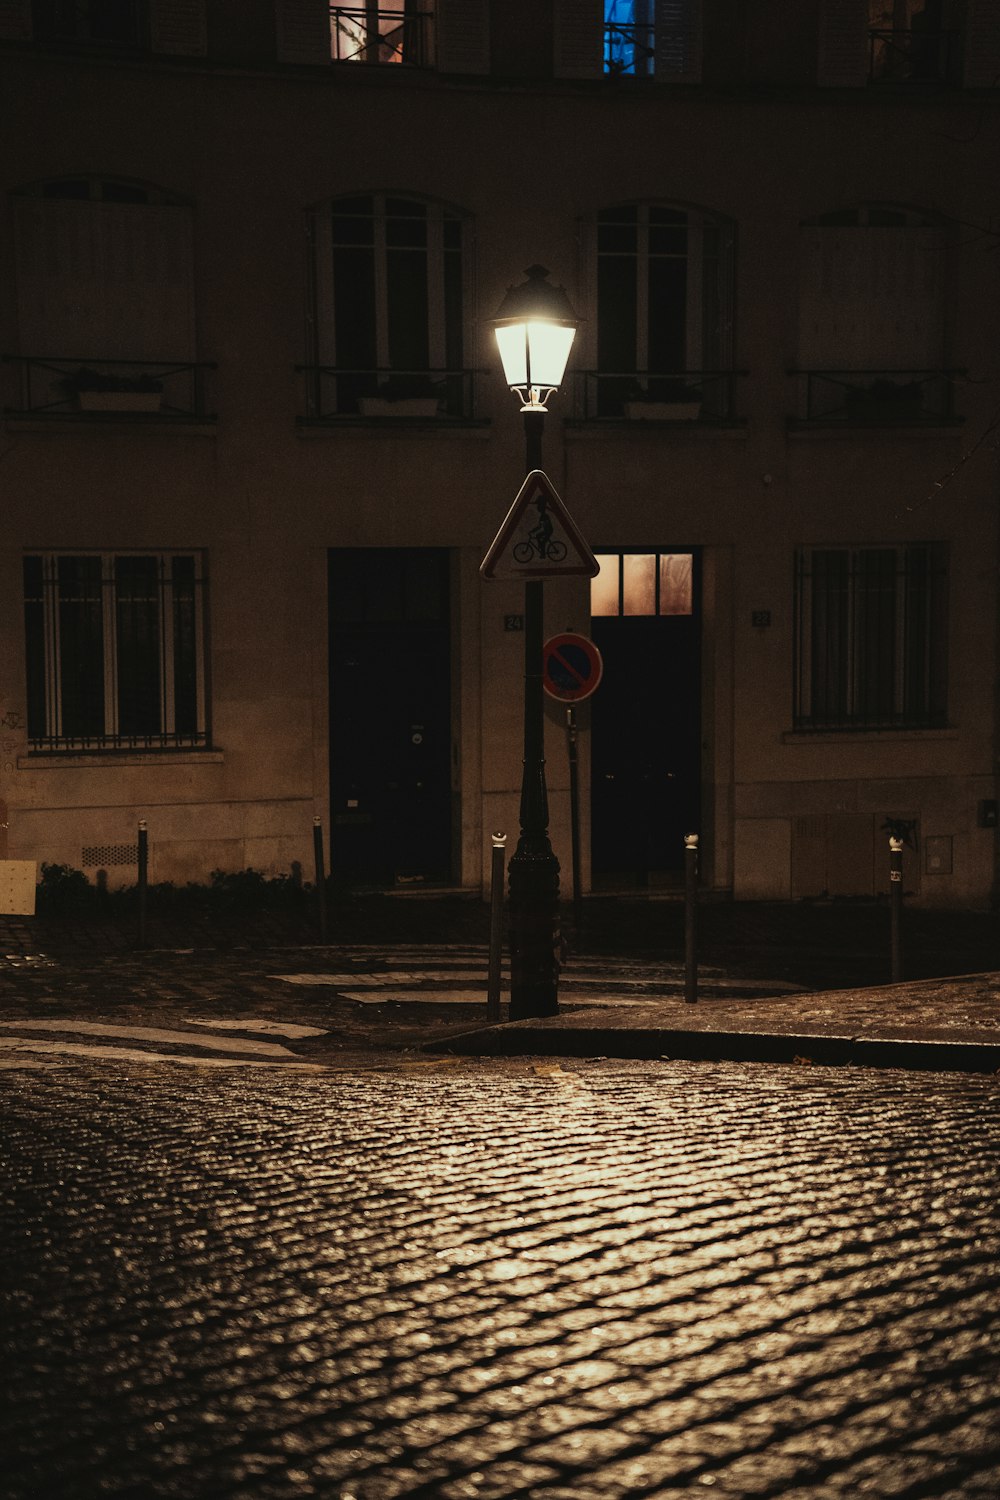 Un letrero en una calle empedrada por la noche